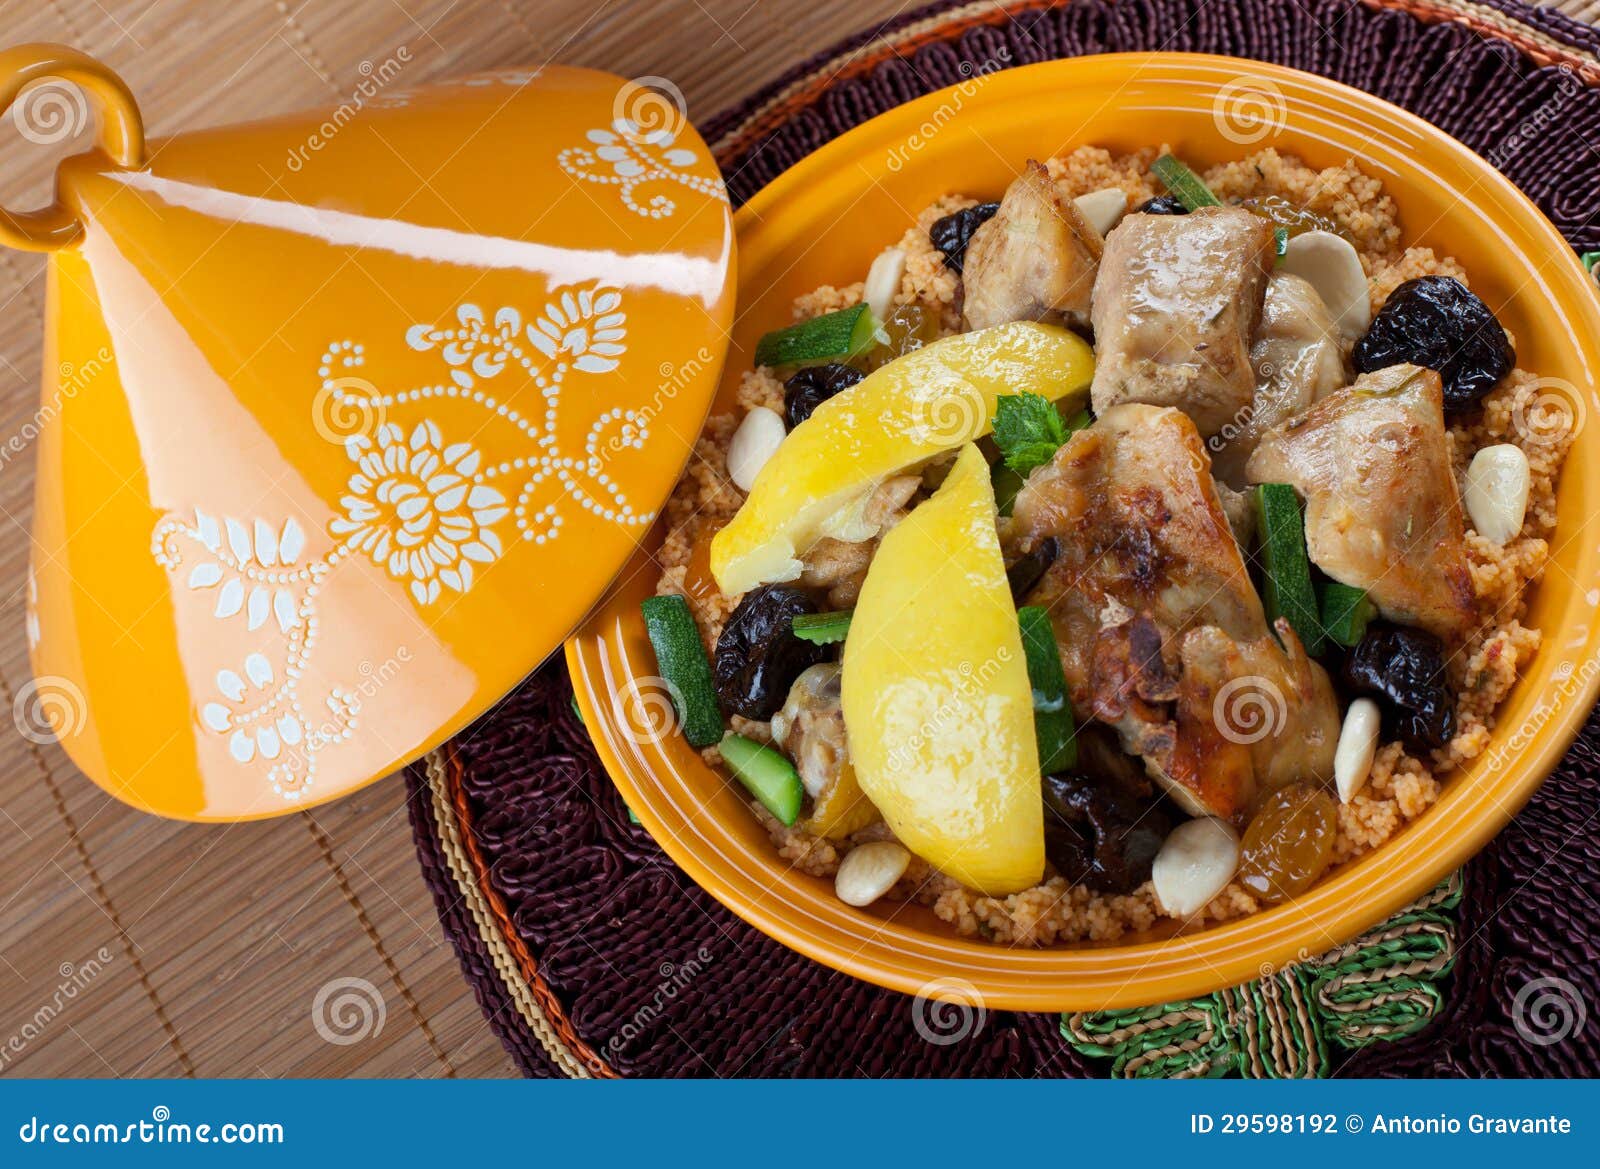 摩洛哥蔬菜的传统西莫拉菜 库存照片. 图片 包括有 摩洛哥, 制动手, 咖喱, 食物, 产物, 海鲜, 蔬菜 - 271029724